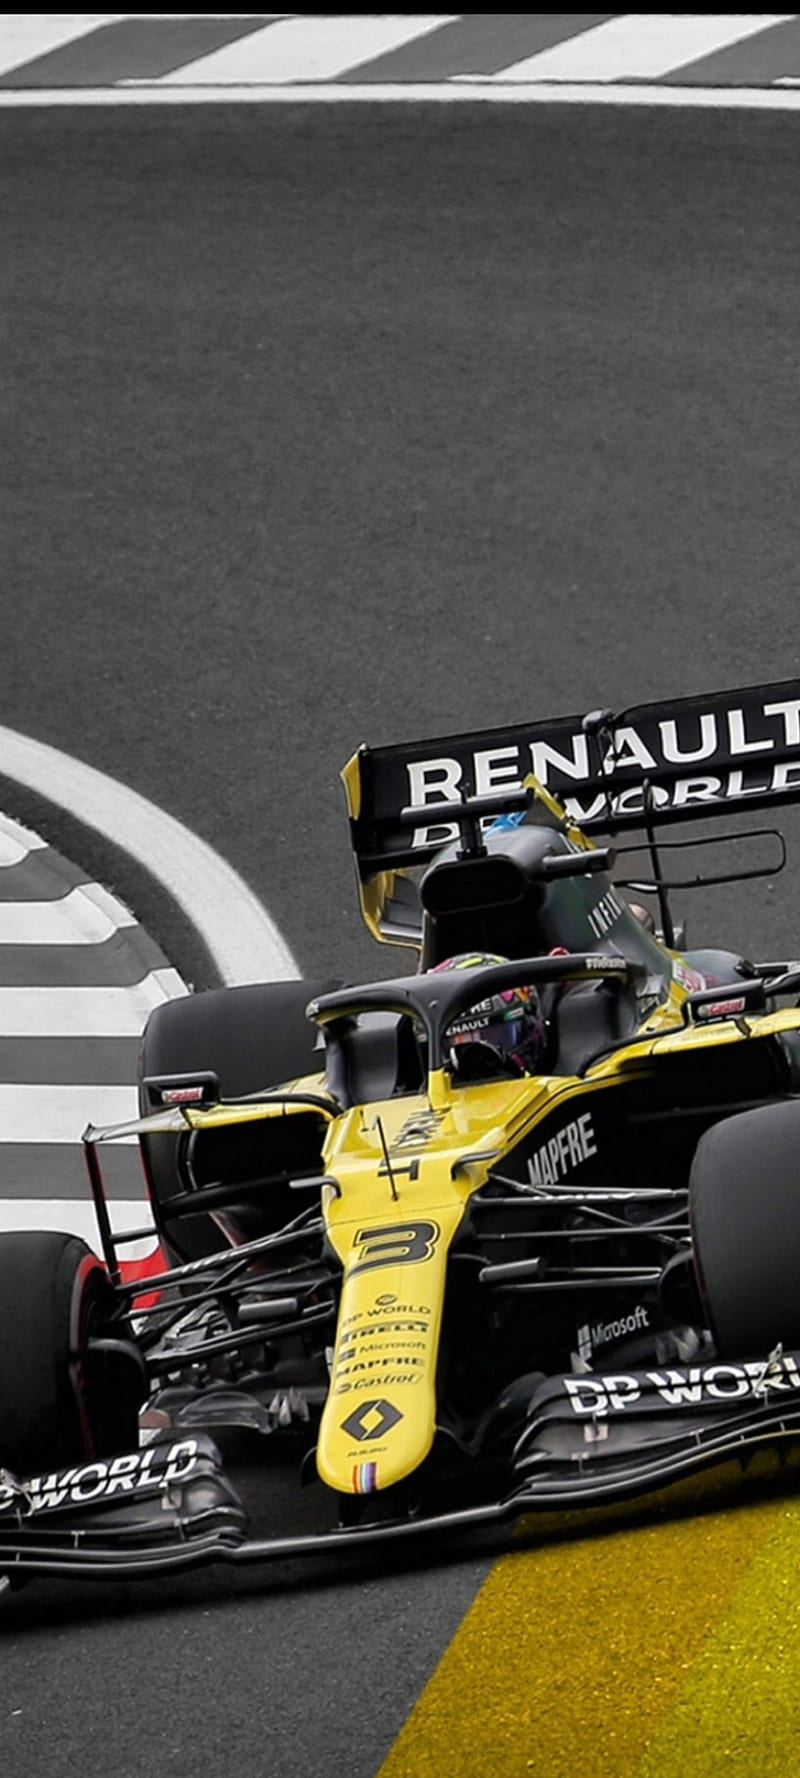 Renault F1, carros, f1, formula, racecars, renault, renaultf1, yellow, HD phone wallpaper